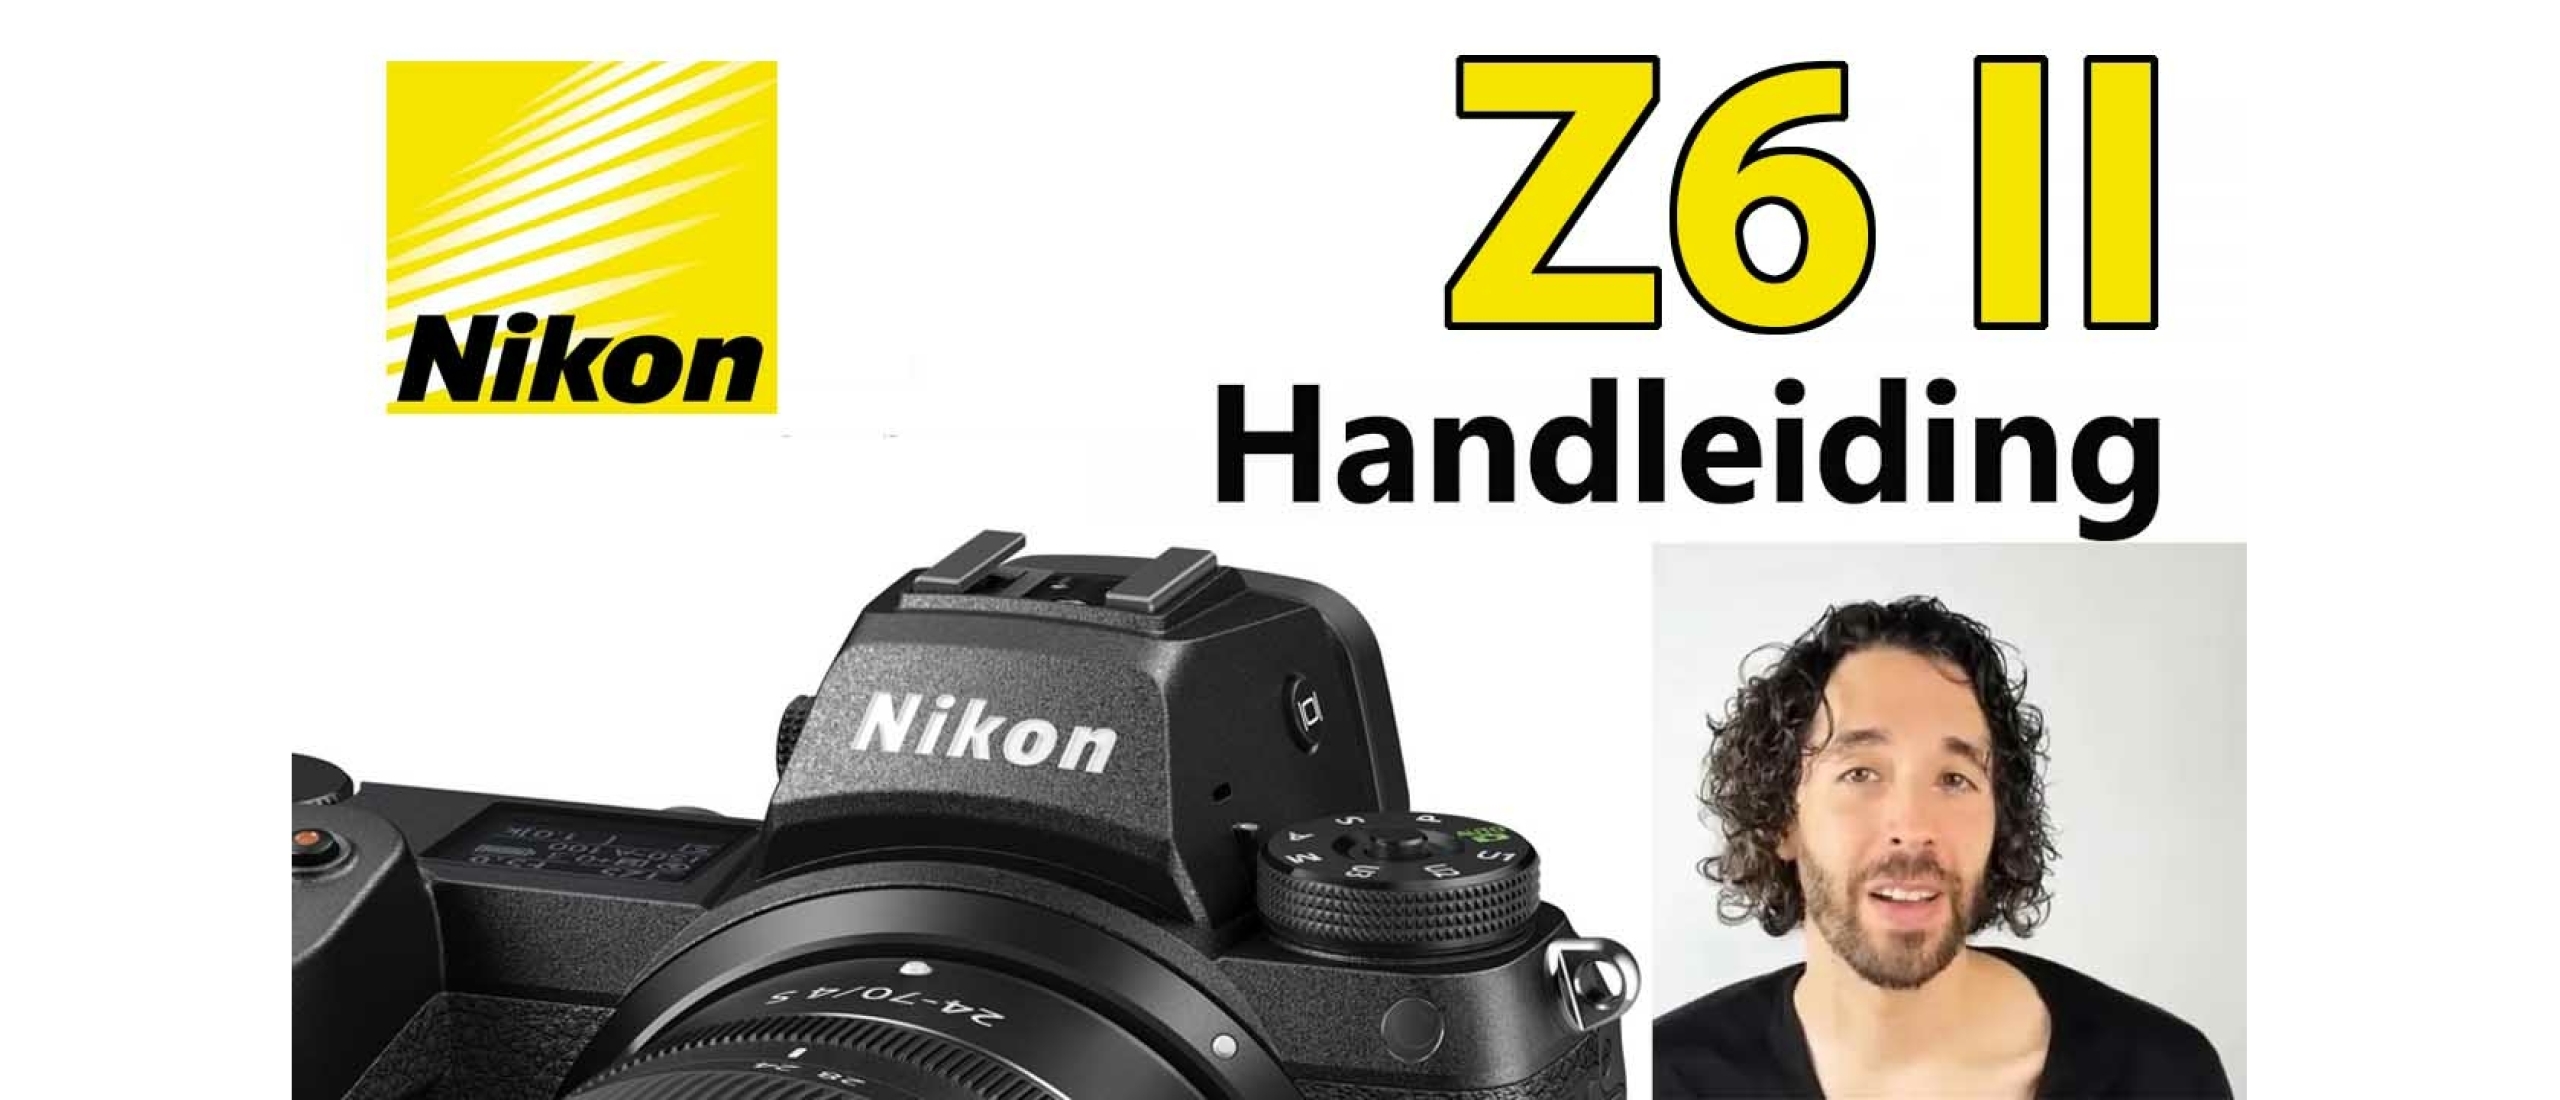 Nikon Z6 II Handleiding Video: Menu, Functies, Knoppen & Instellingen uitgelegd